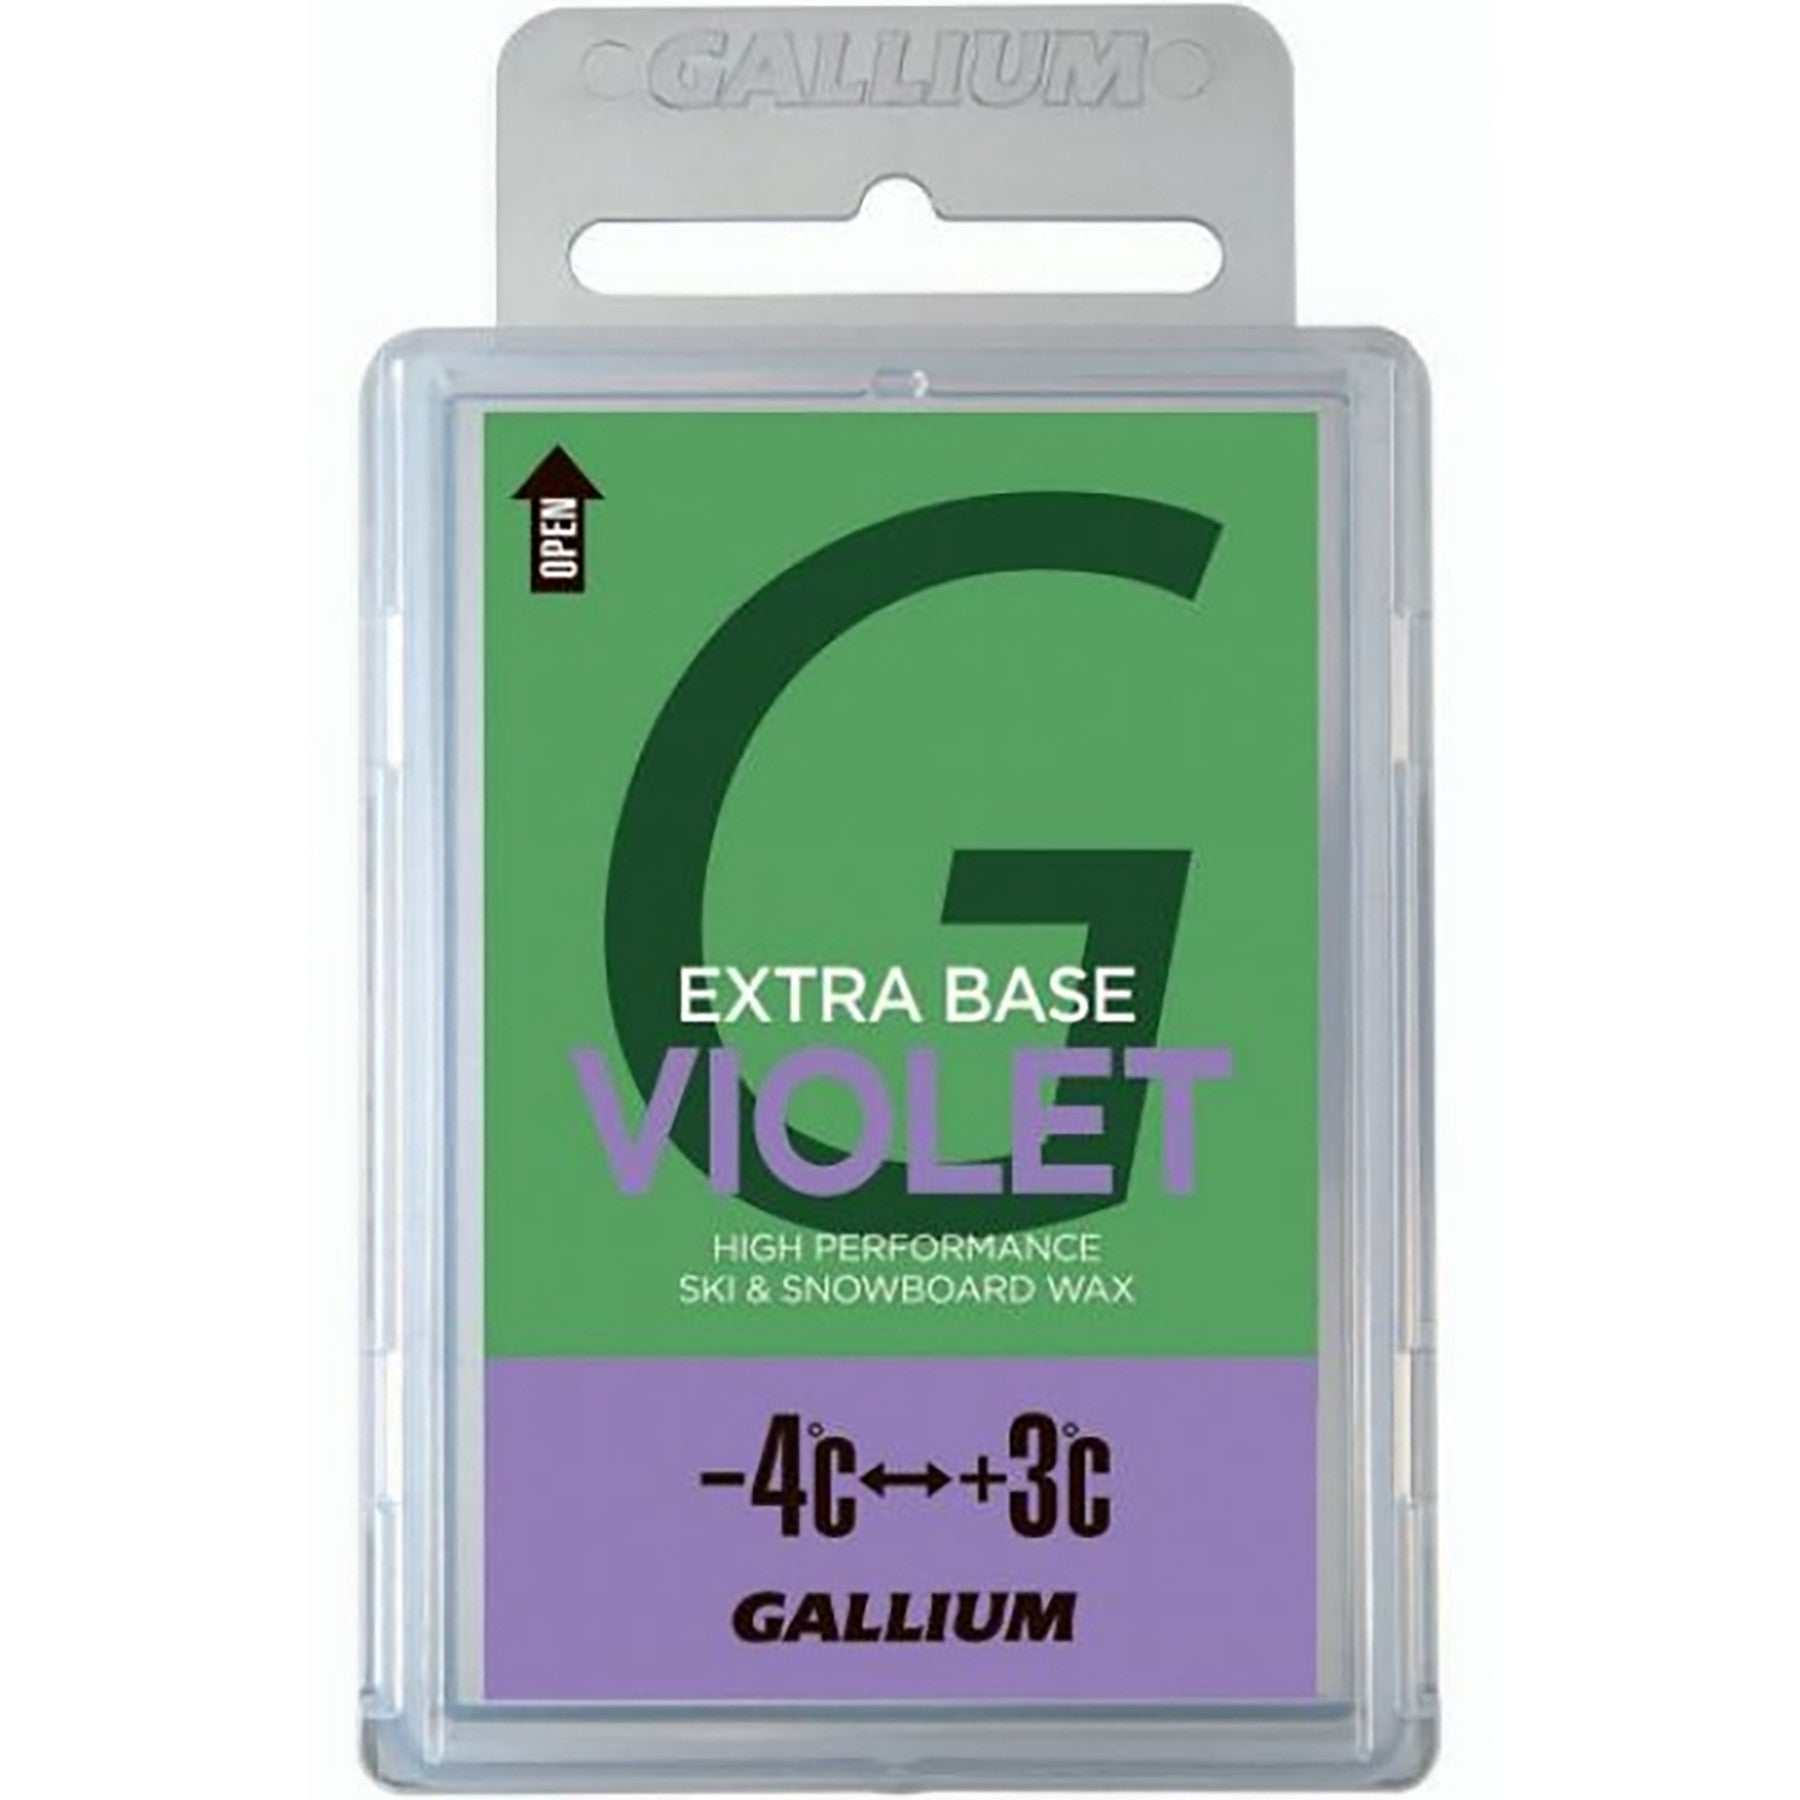 Gallium VIOLET Glide Wax 100g